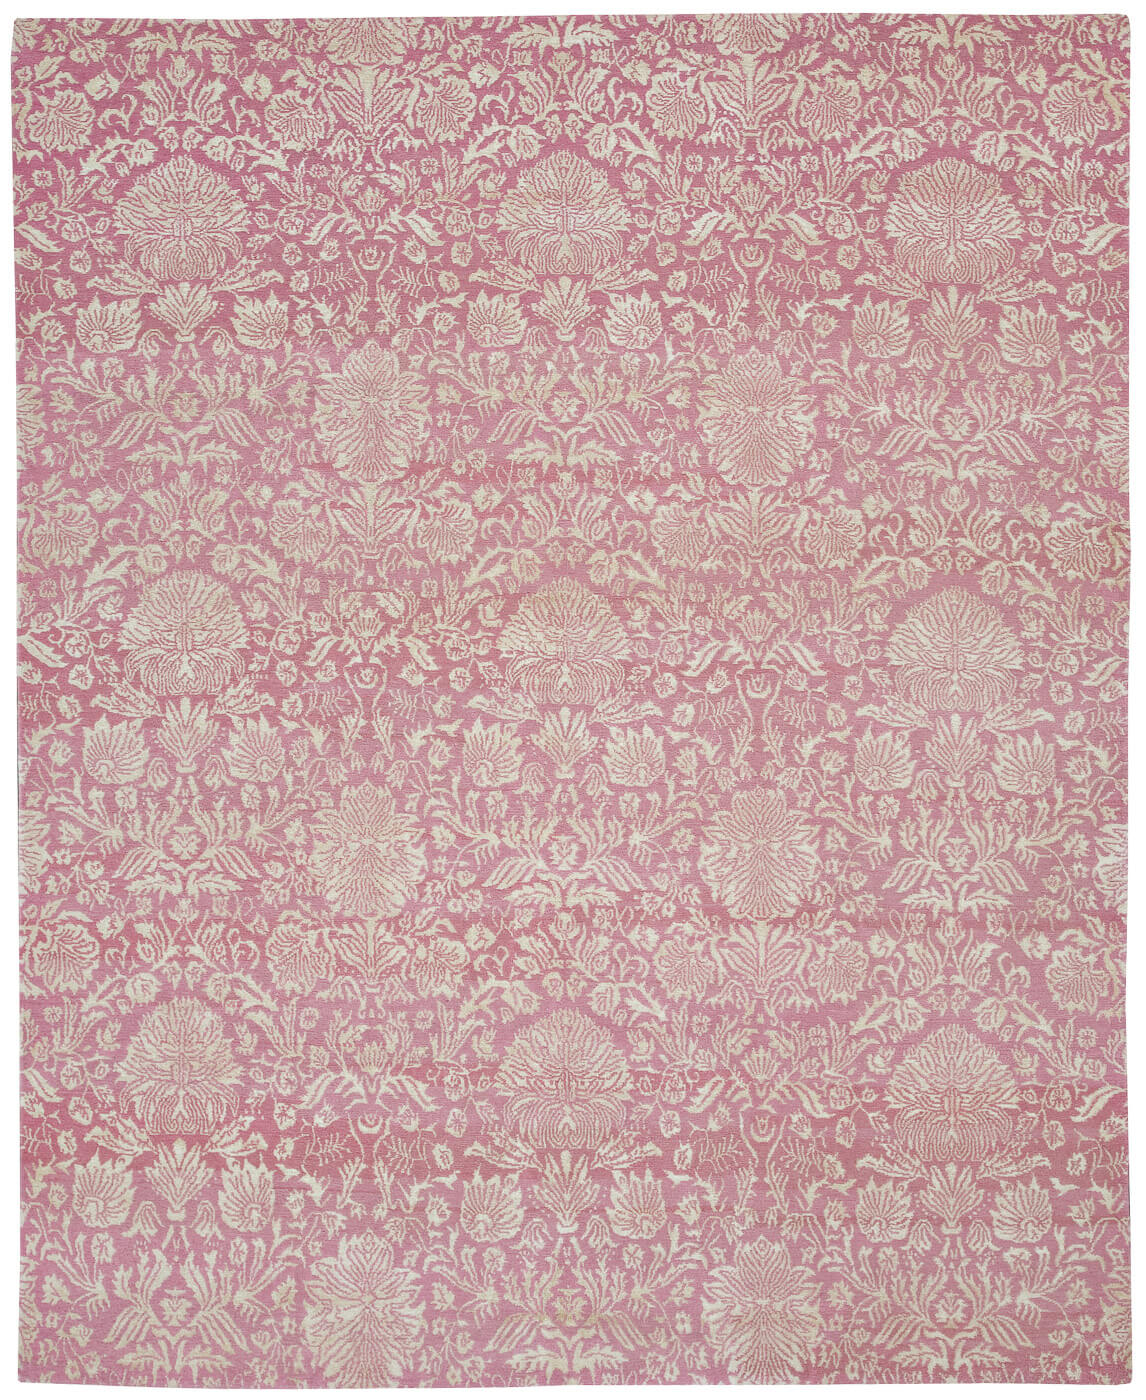 Verona Pink Luxury Hand-woven Rug ☞ Size: 200 x 300 cm